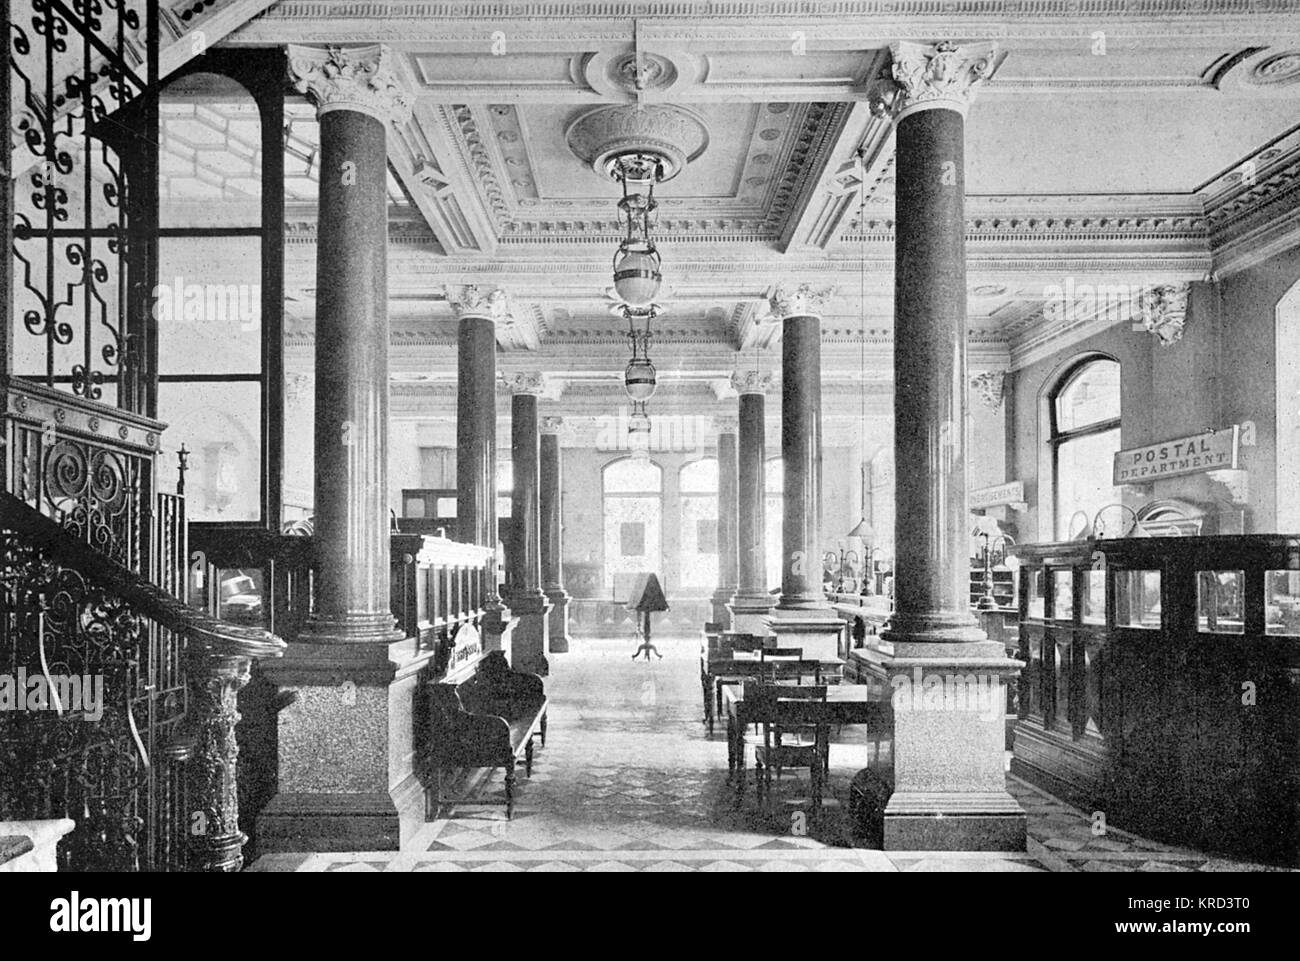 La salle de la Daily Telegraph à très beau avec ses piliers de granit rouge. La vue est prise en direction de Fleet Street. Date : 1914 Banque D'Images